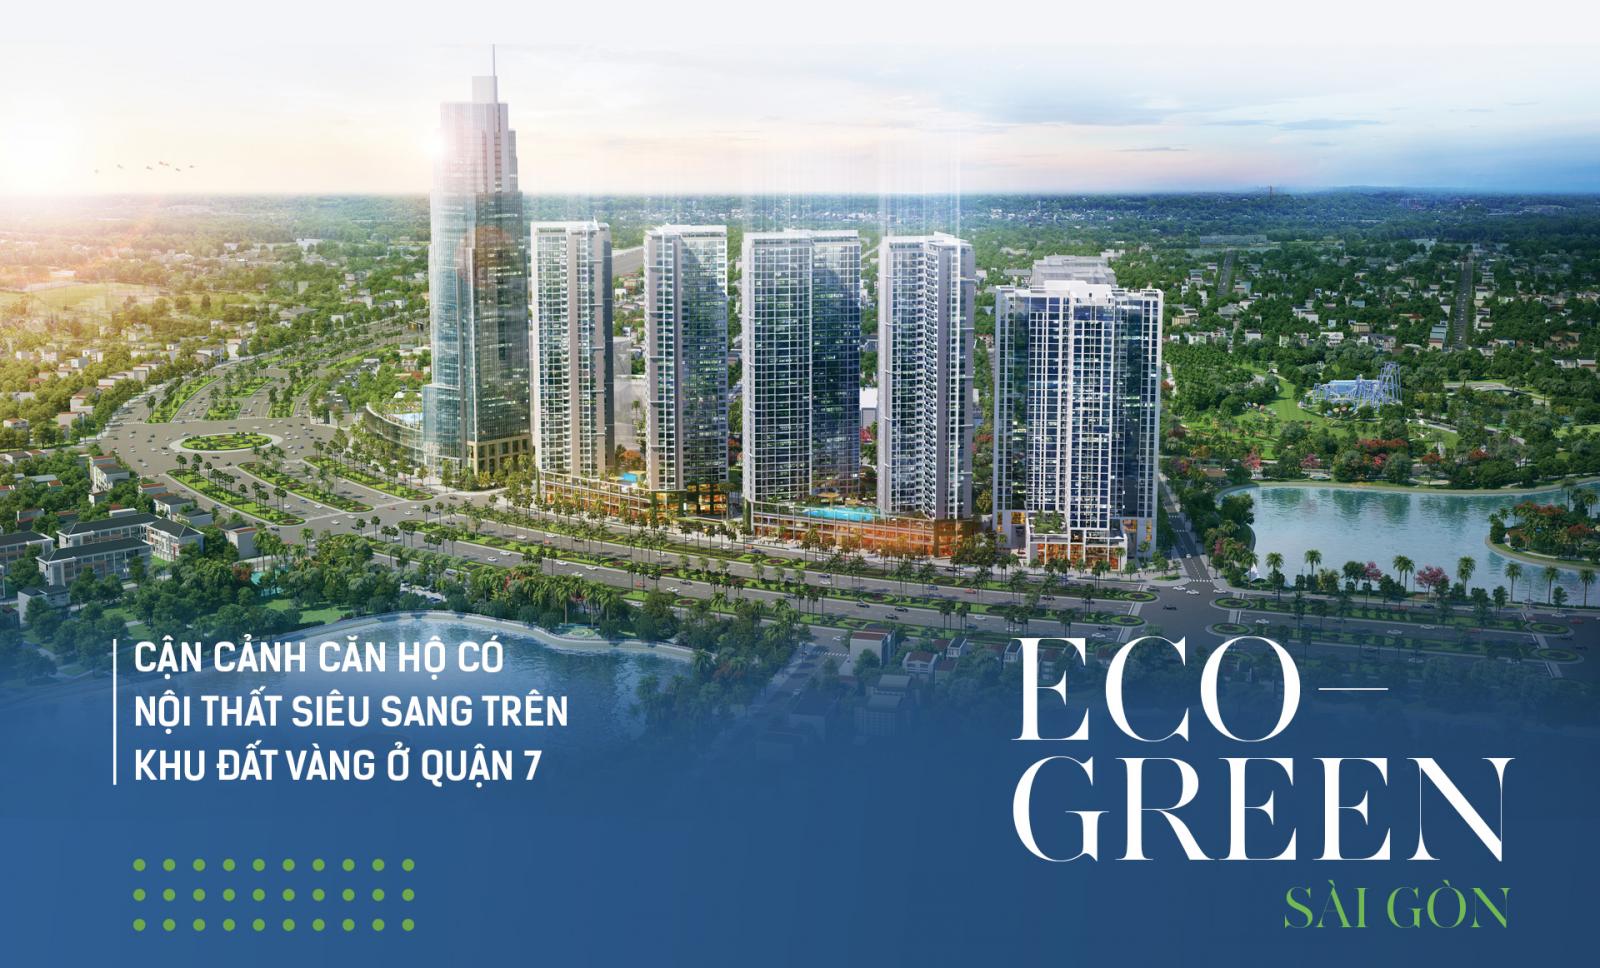 Tham quan nhà mẫu Eco Green Sài Gòn Quận 7 - Đăng kí LH: 0909.405.455